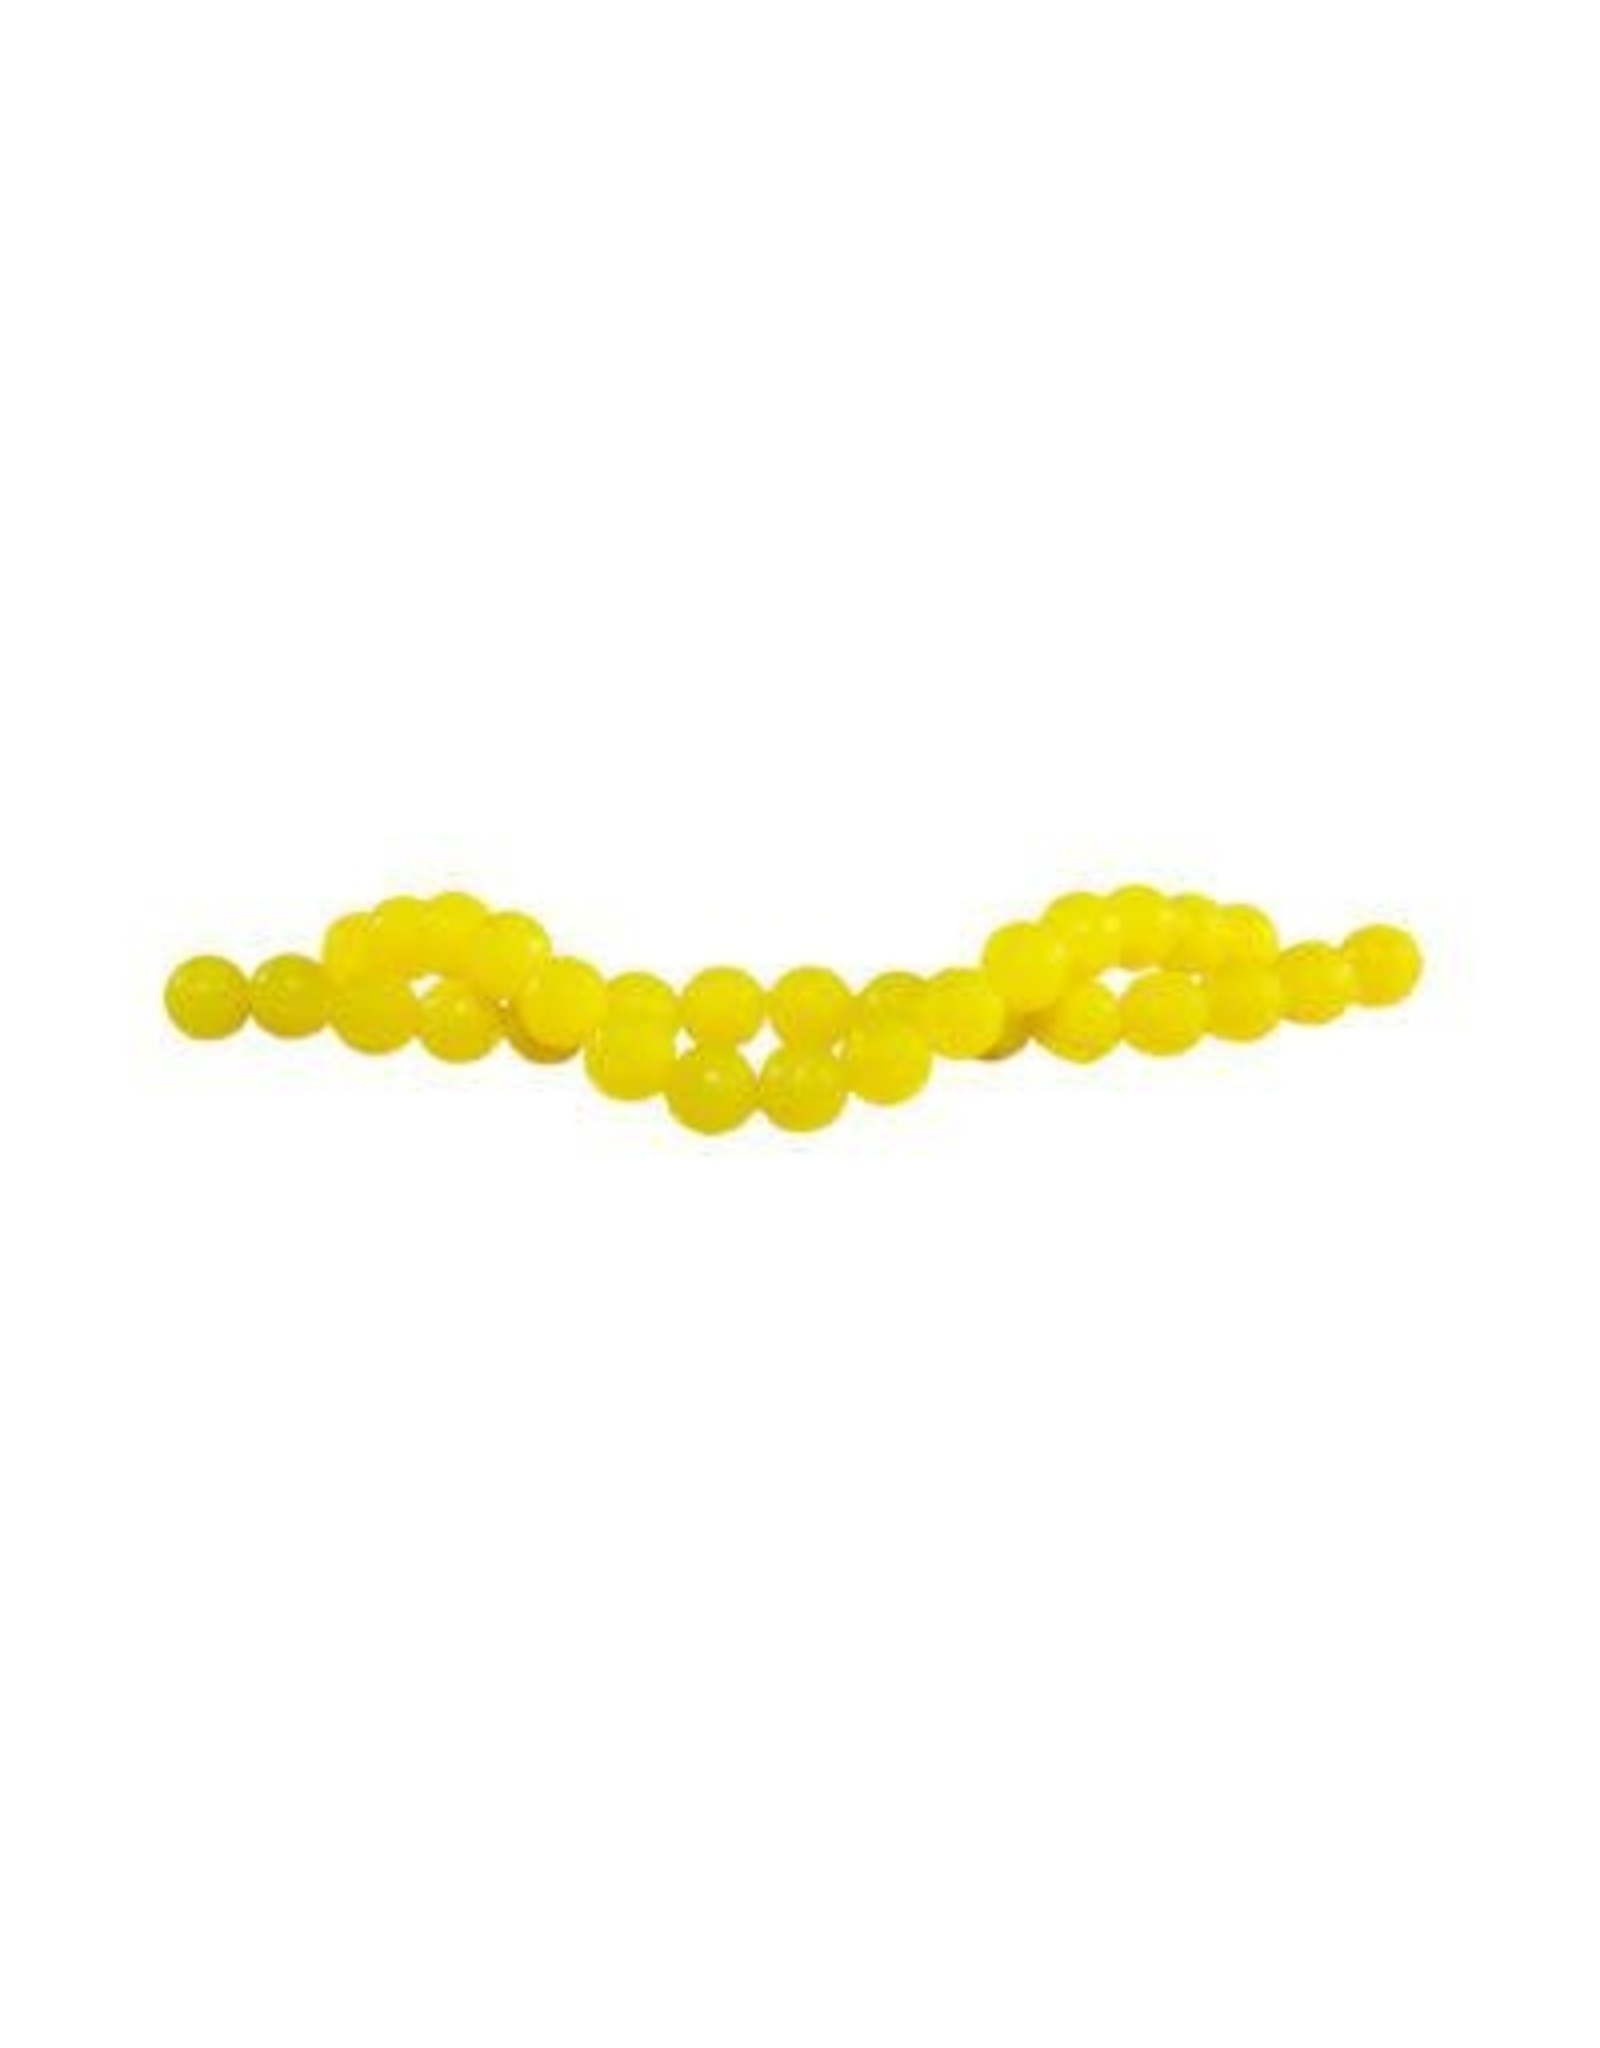 Pautzke Garlic Fire Eggs - Yellow - 30 Count